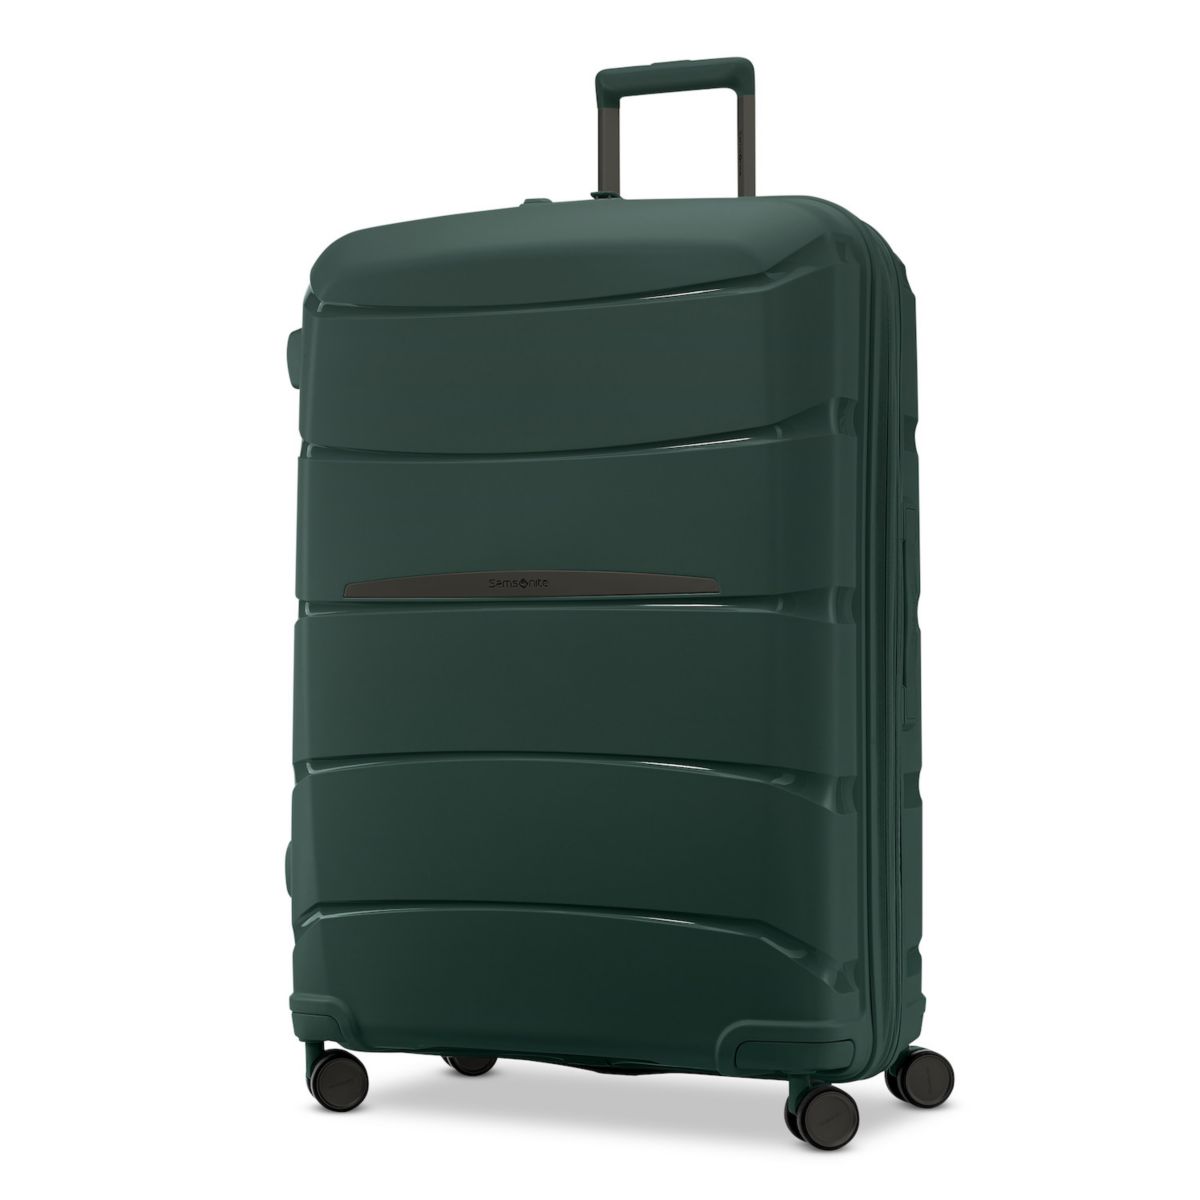 Samsonite Outline Pro Hardside Spinner Luggage Samsonite